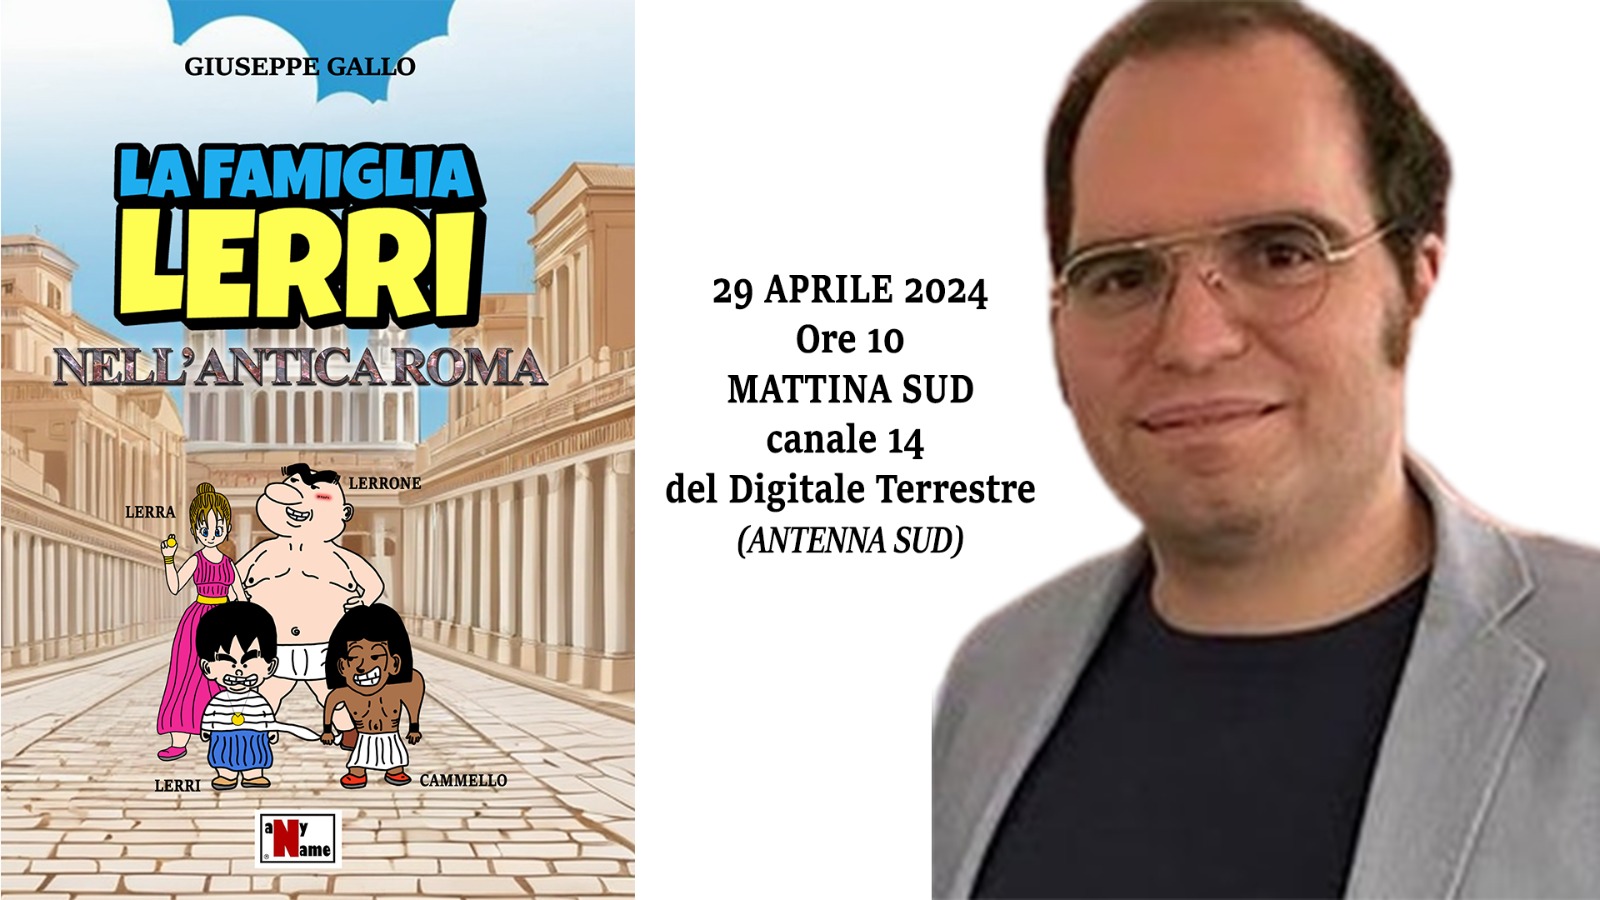 “La Famiglia Lerri nell’Antica Roma”, il nuovo romanzo di Giuseppe Gallo presentato nel programma televisivo “Mattina Sud”